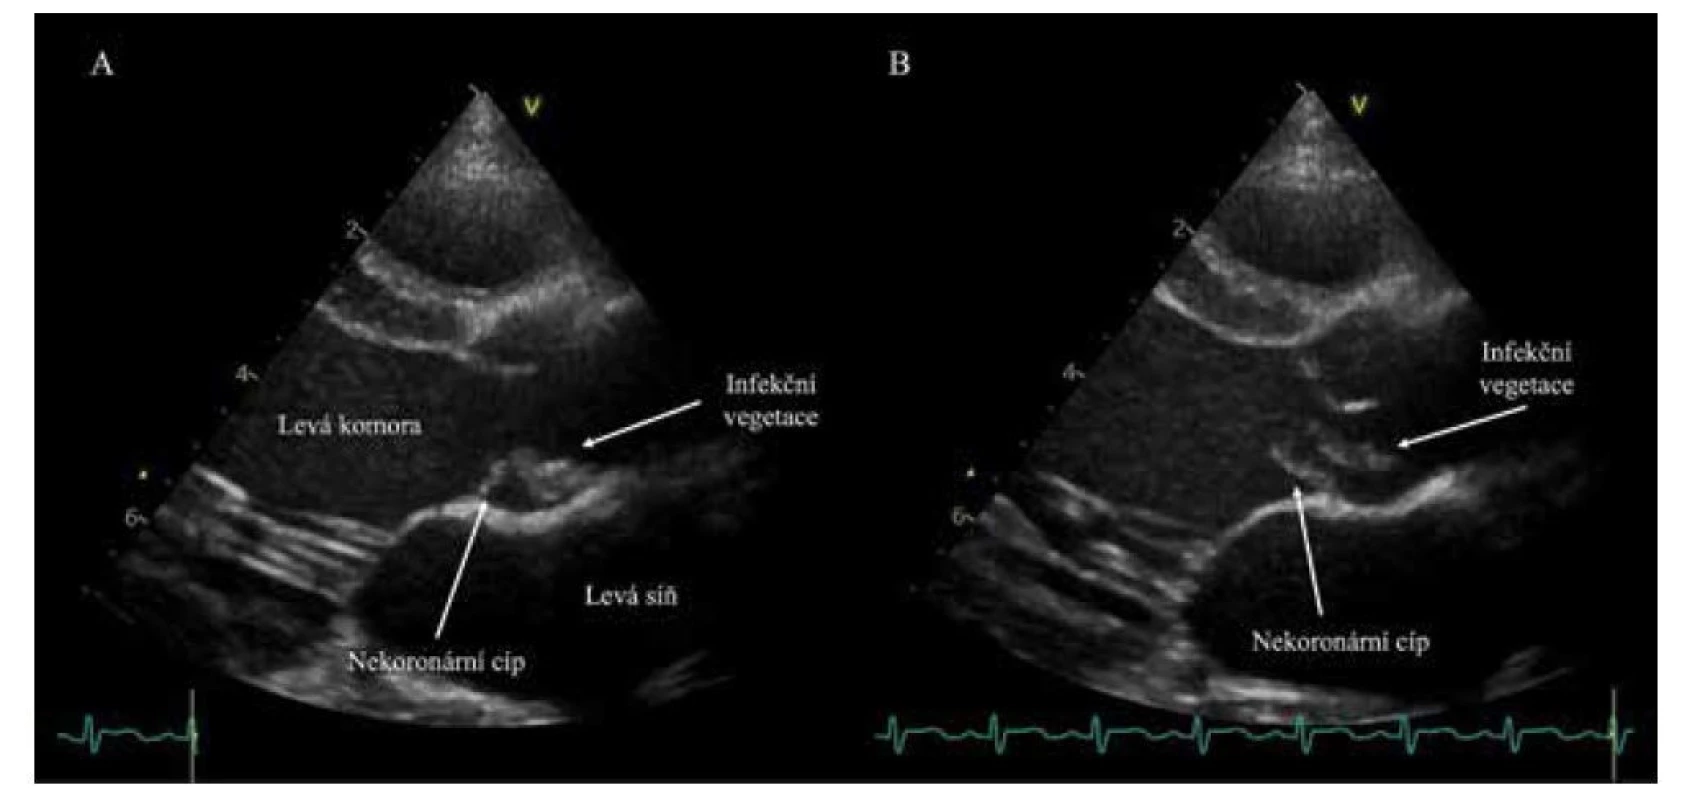 Echokardiografické vyšetření. Zobrazení aortální chlopně a infekční vegetace během srdečního cyklu.
A: Vlající vegetace na nekoronárním cípu v systole. B: Stejná struktura s prolabujícím nekoronárním cípem v diastole.<br>
Fig. 2. Echocardiography displaying aortic valve with a vegetation during a cardiac cycle. A: A vegetation attached
to the non-coronary cusp of aortic valve in systole. B: The same structure displayed in diastole.